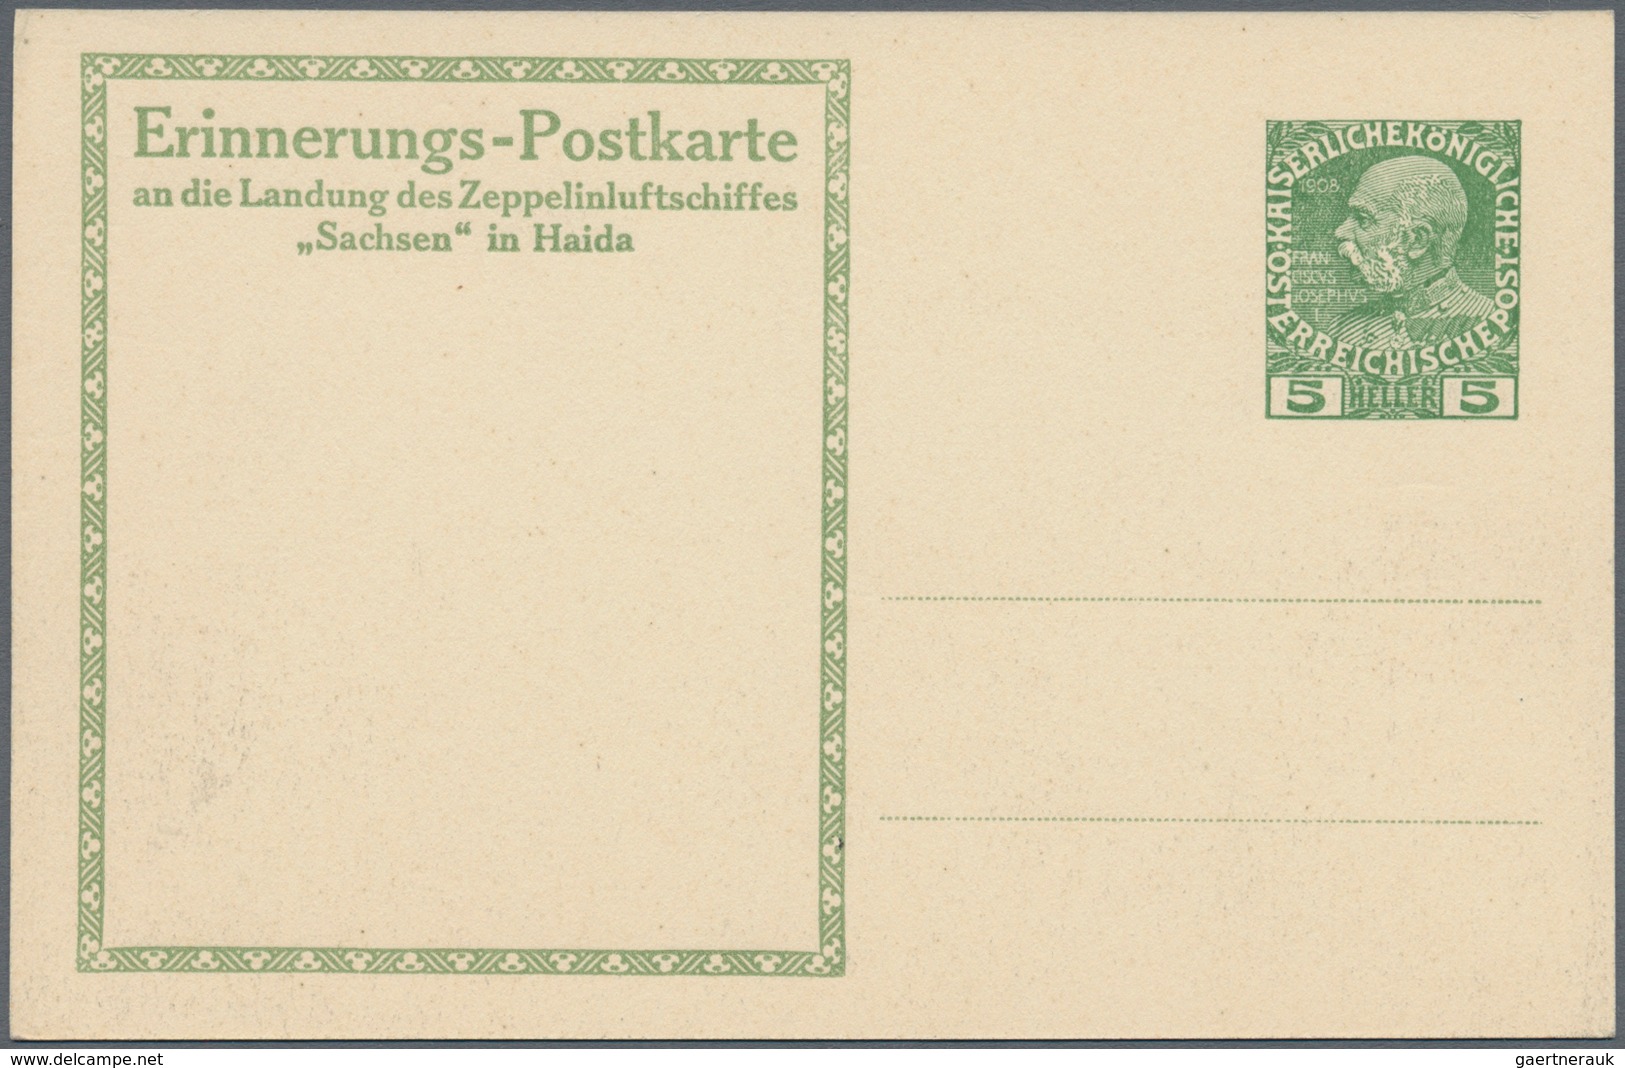 Österreich - Zeppelinpost: 1913, LZ 17 SACHSEN, 6 verschiedene 5 H Franz-Josef Privat-GSK "Landungsp